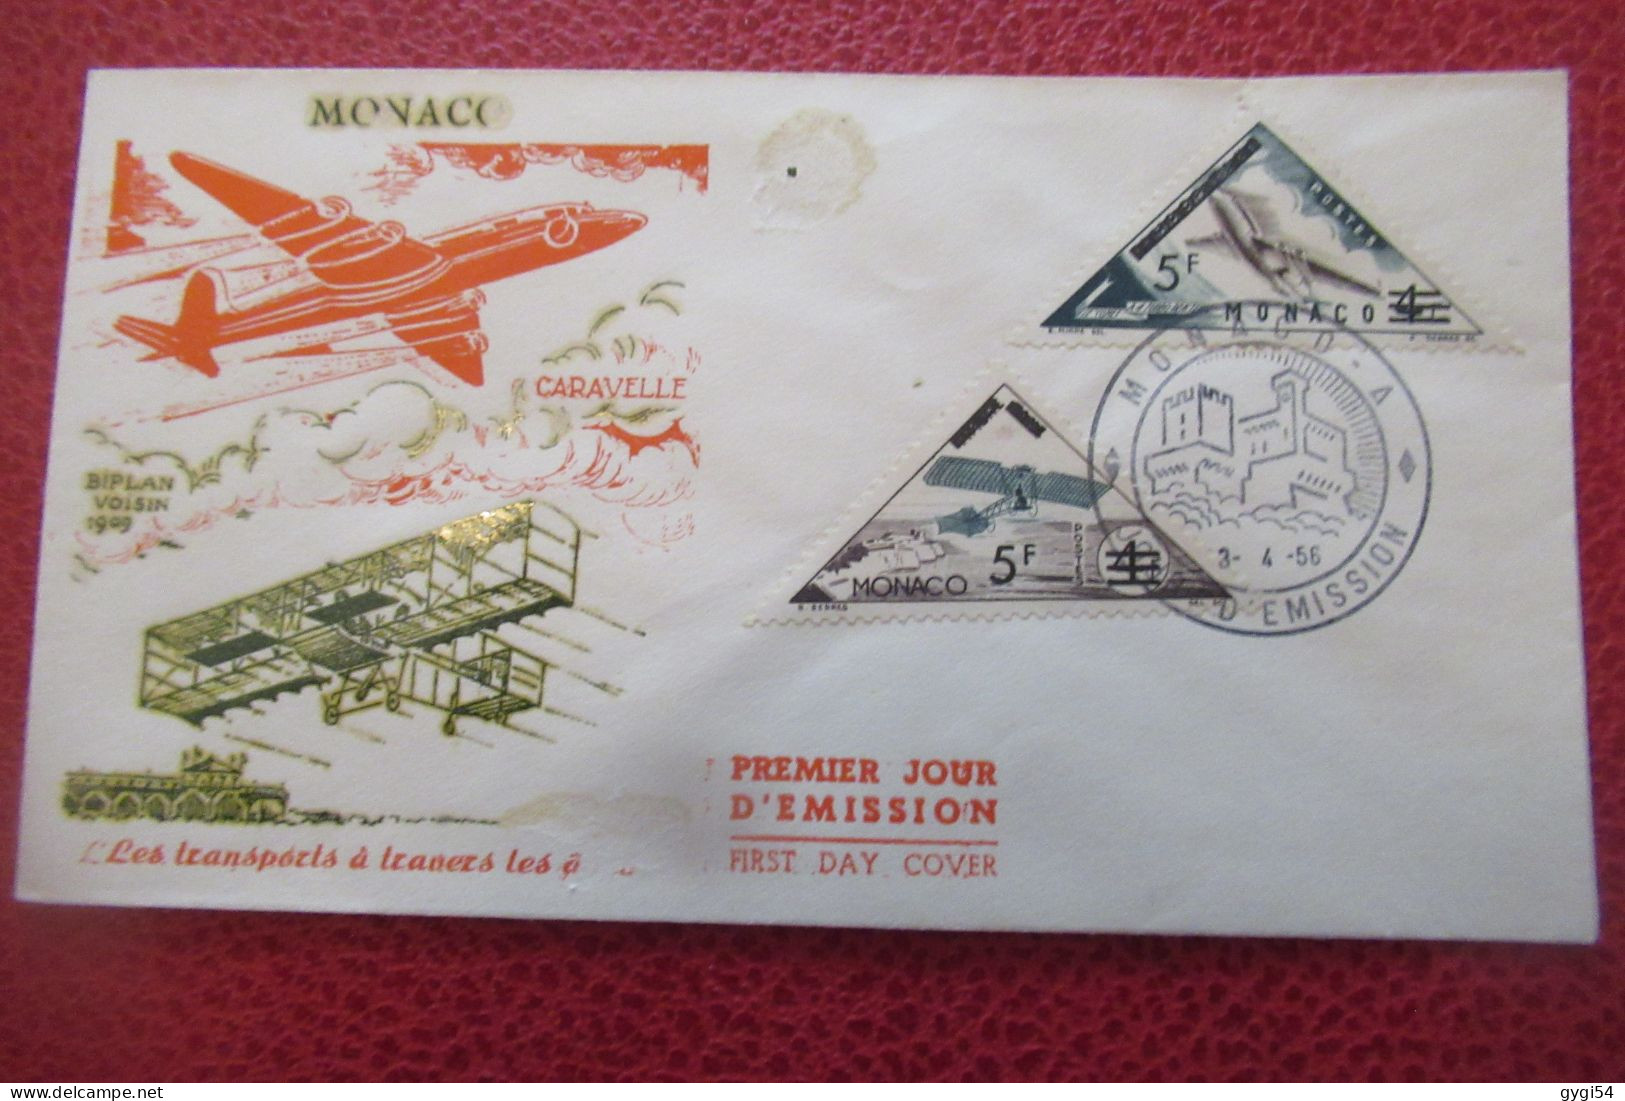 MONACO  FDC 1956  Transports à Travers Les Ages - FDC